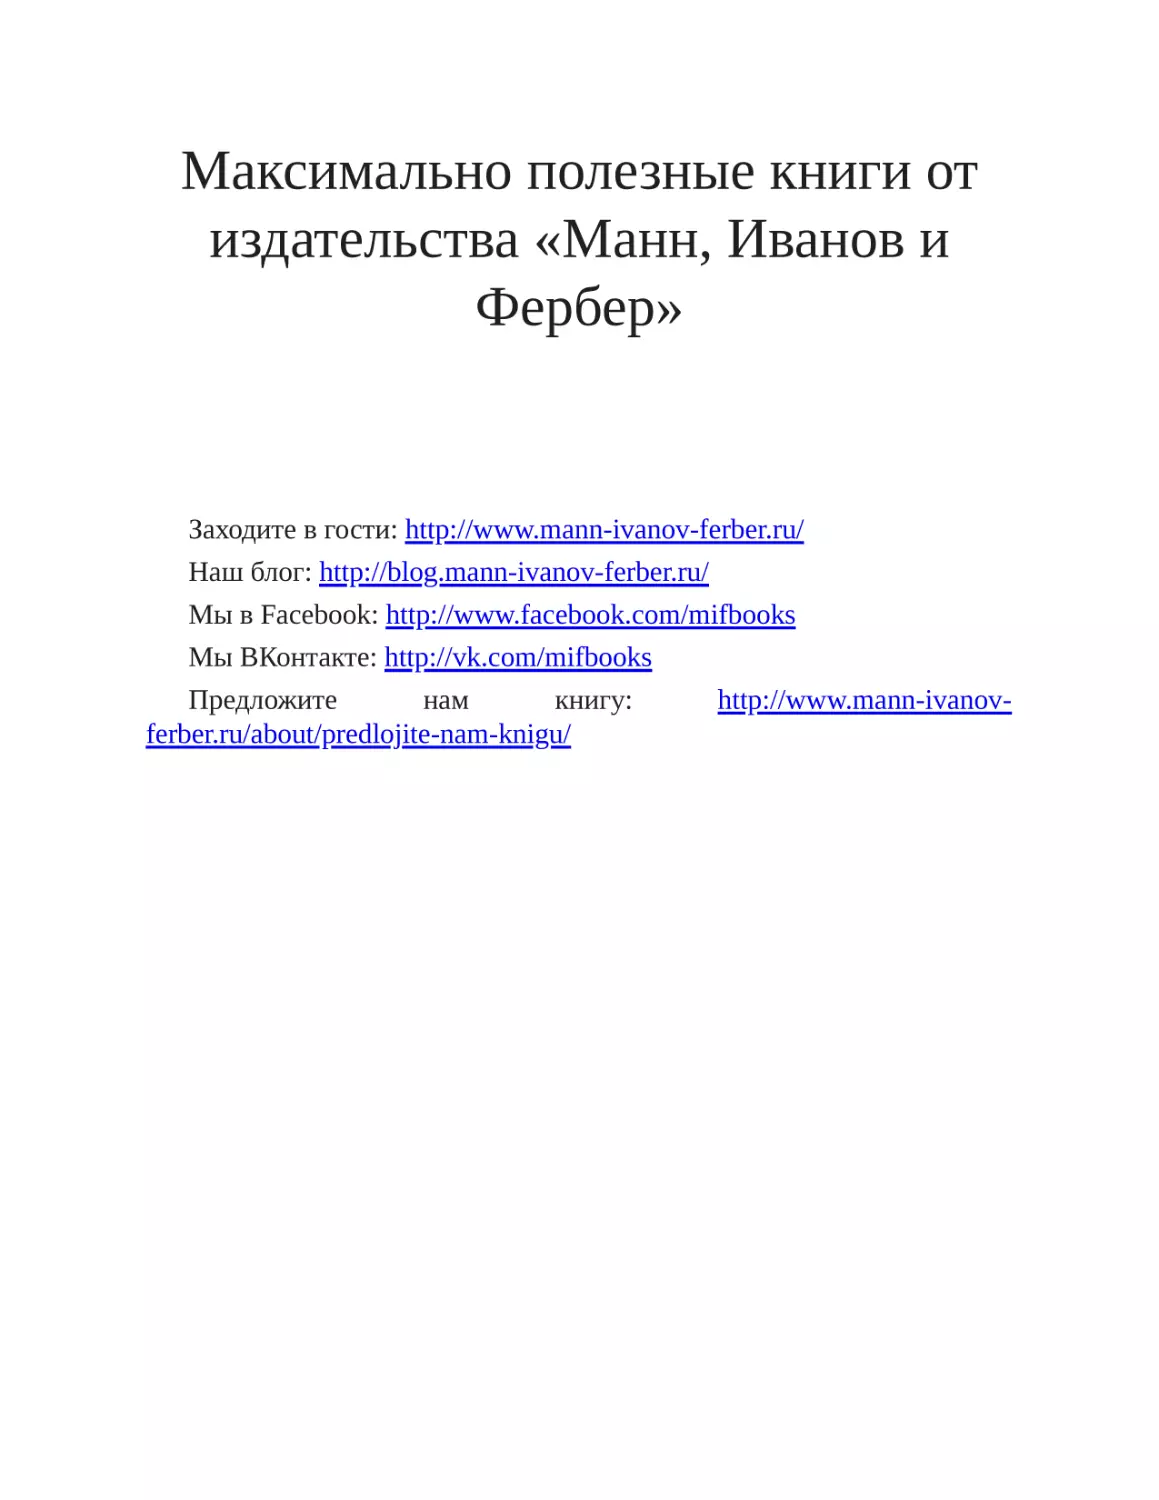 Максимально полезные книги от издательства «Манн, Иванов и Фербер»